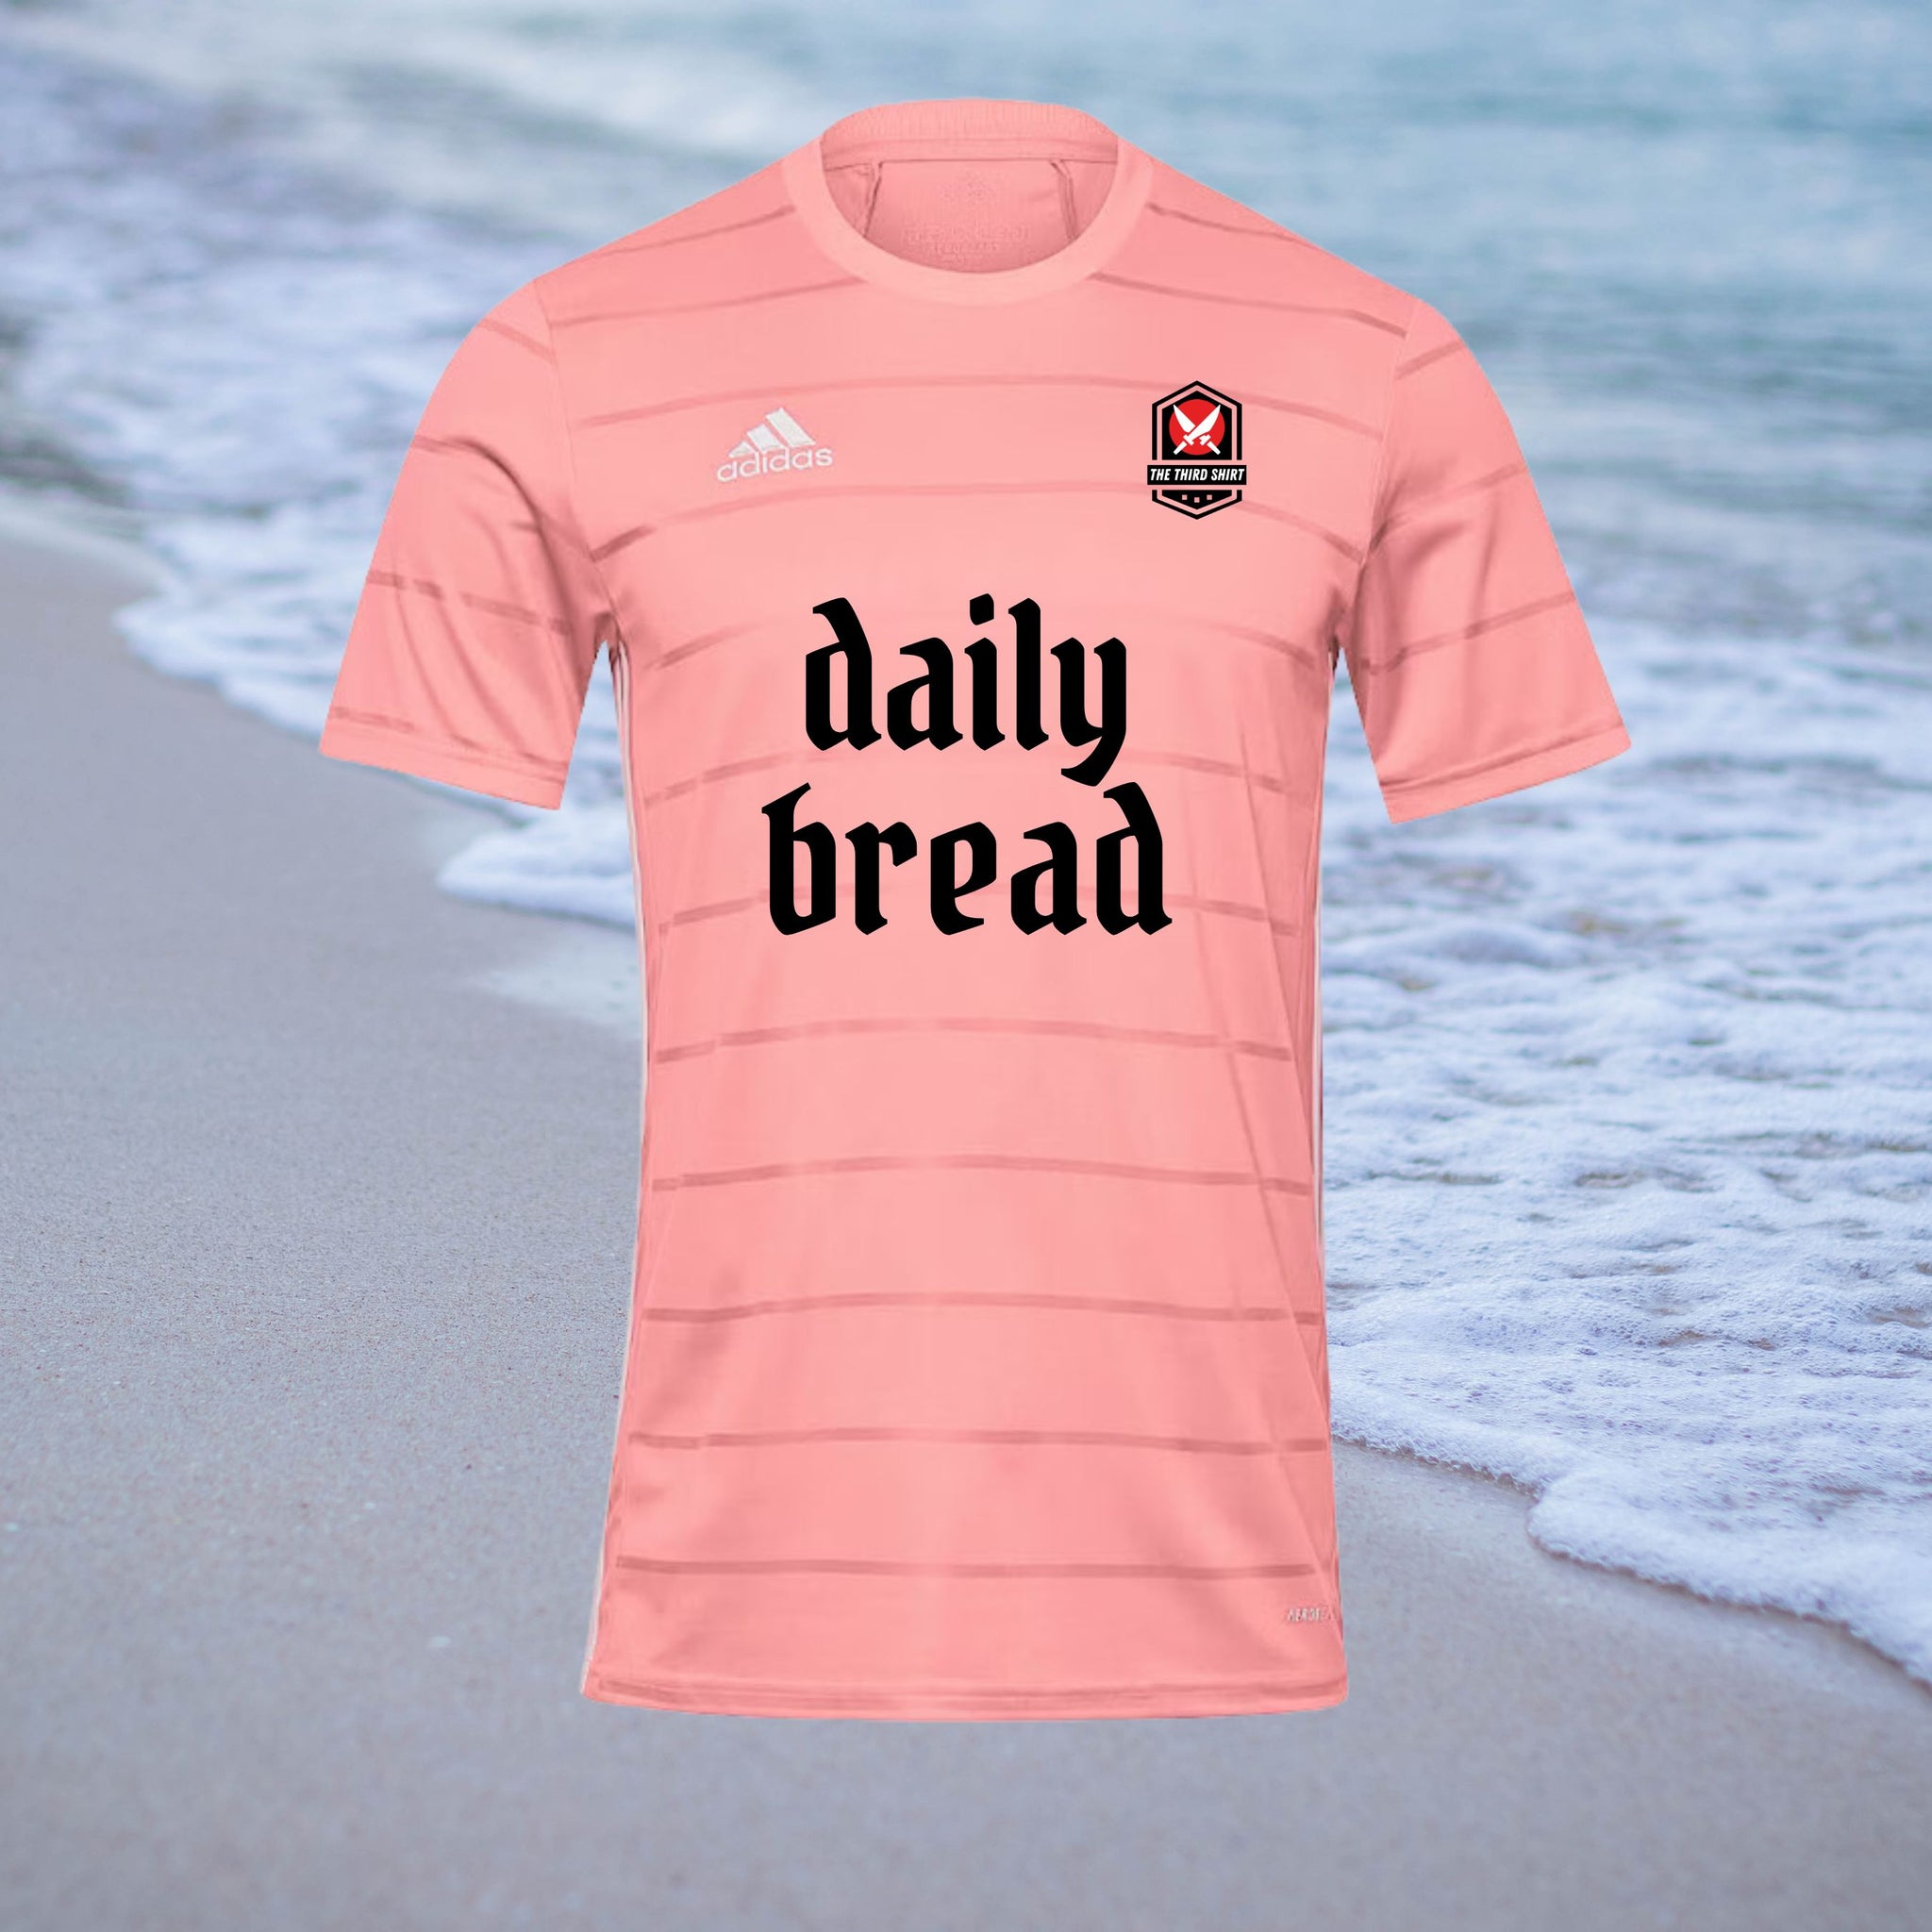 Daily Bread - Pink - Adidas Campeon Shirt